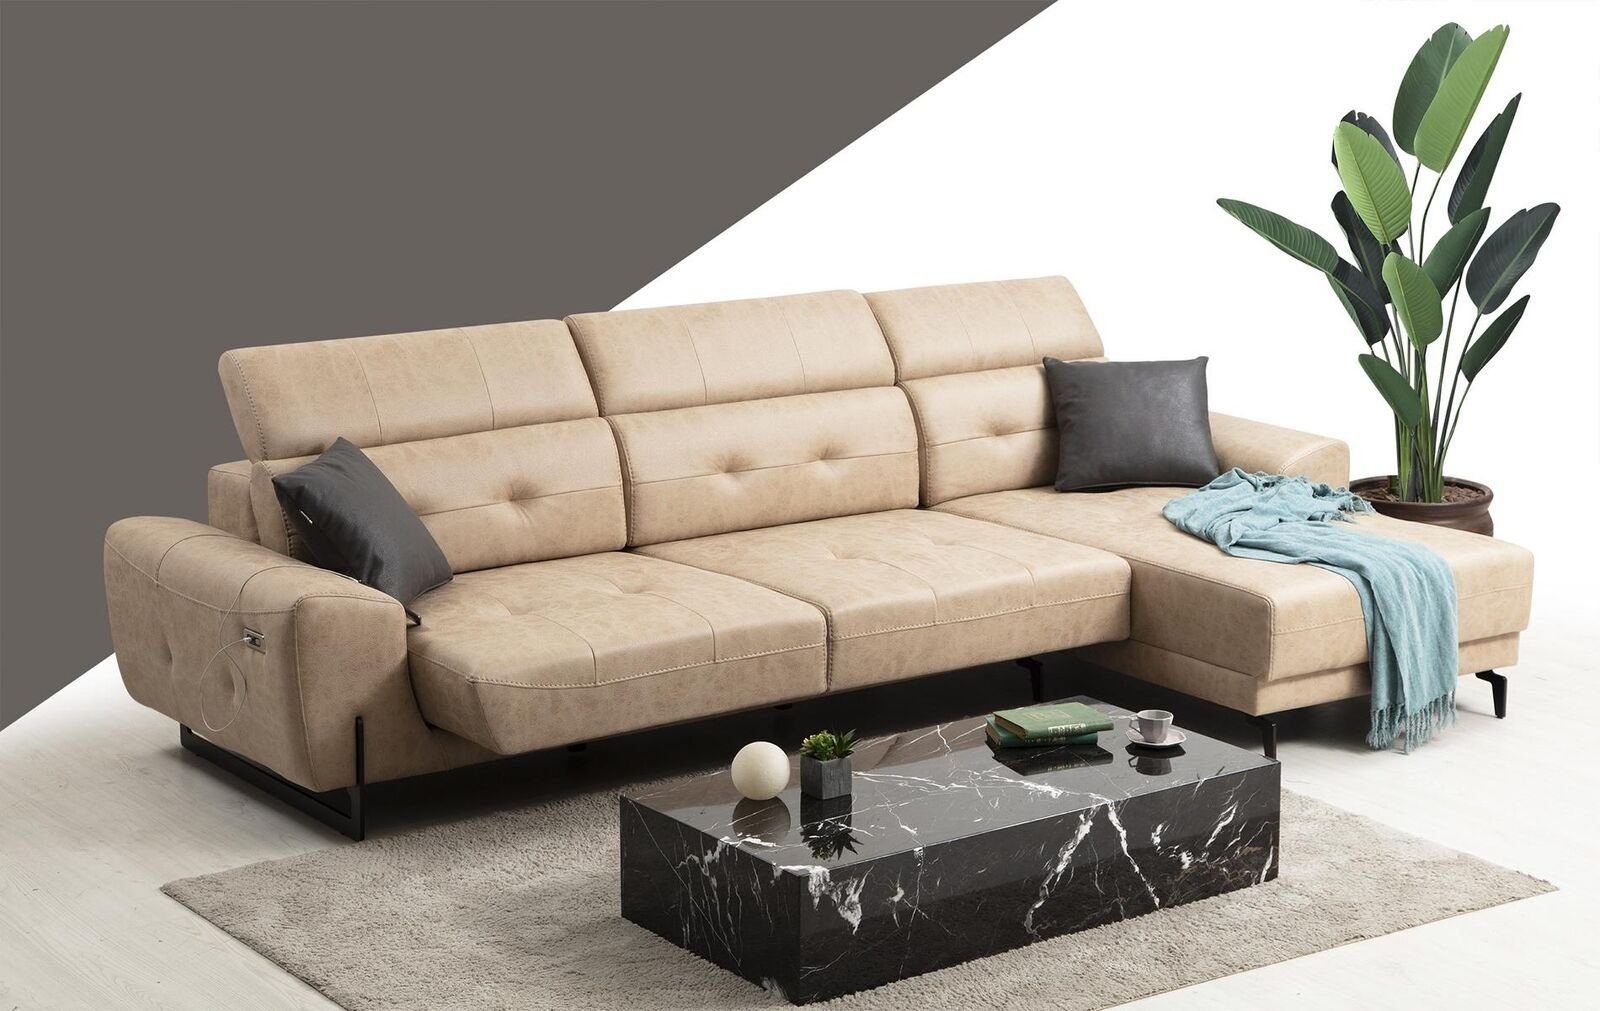 JVmoebel Ecksofa Luxus Wohnzimmer Sofa Teile, Europa in Modern, Made Designer Möbel Couch L-Form 3